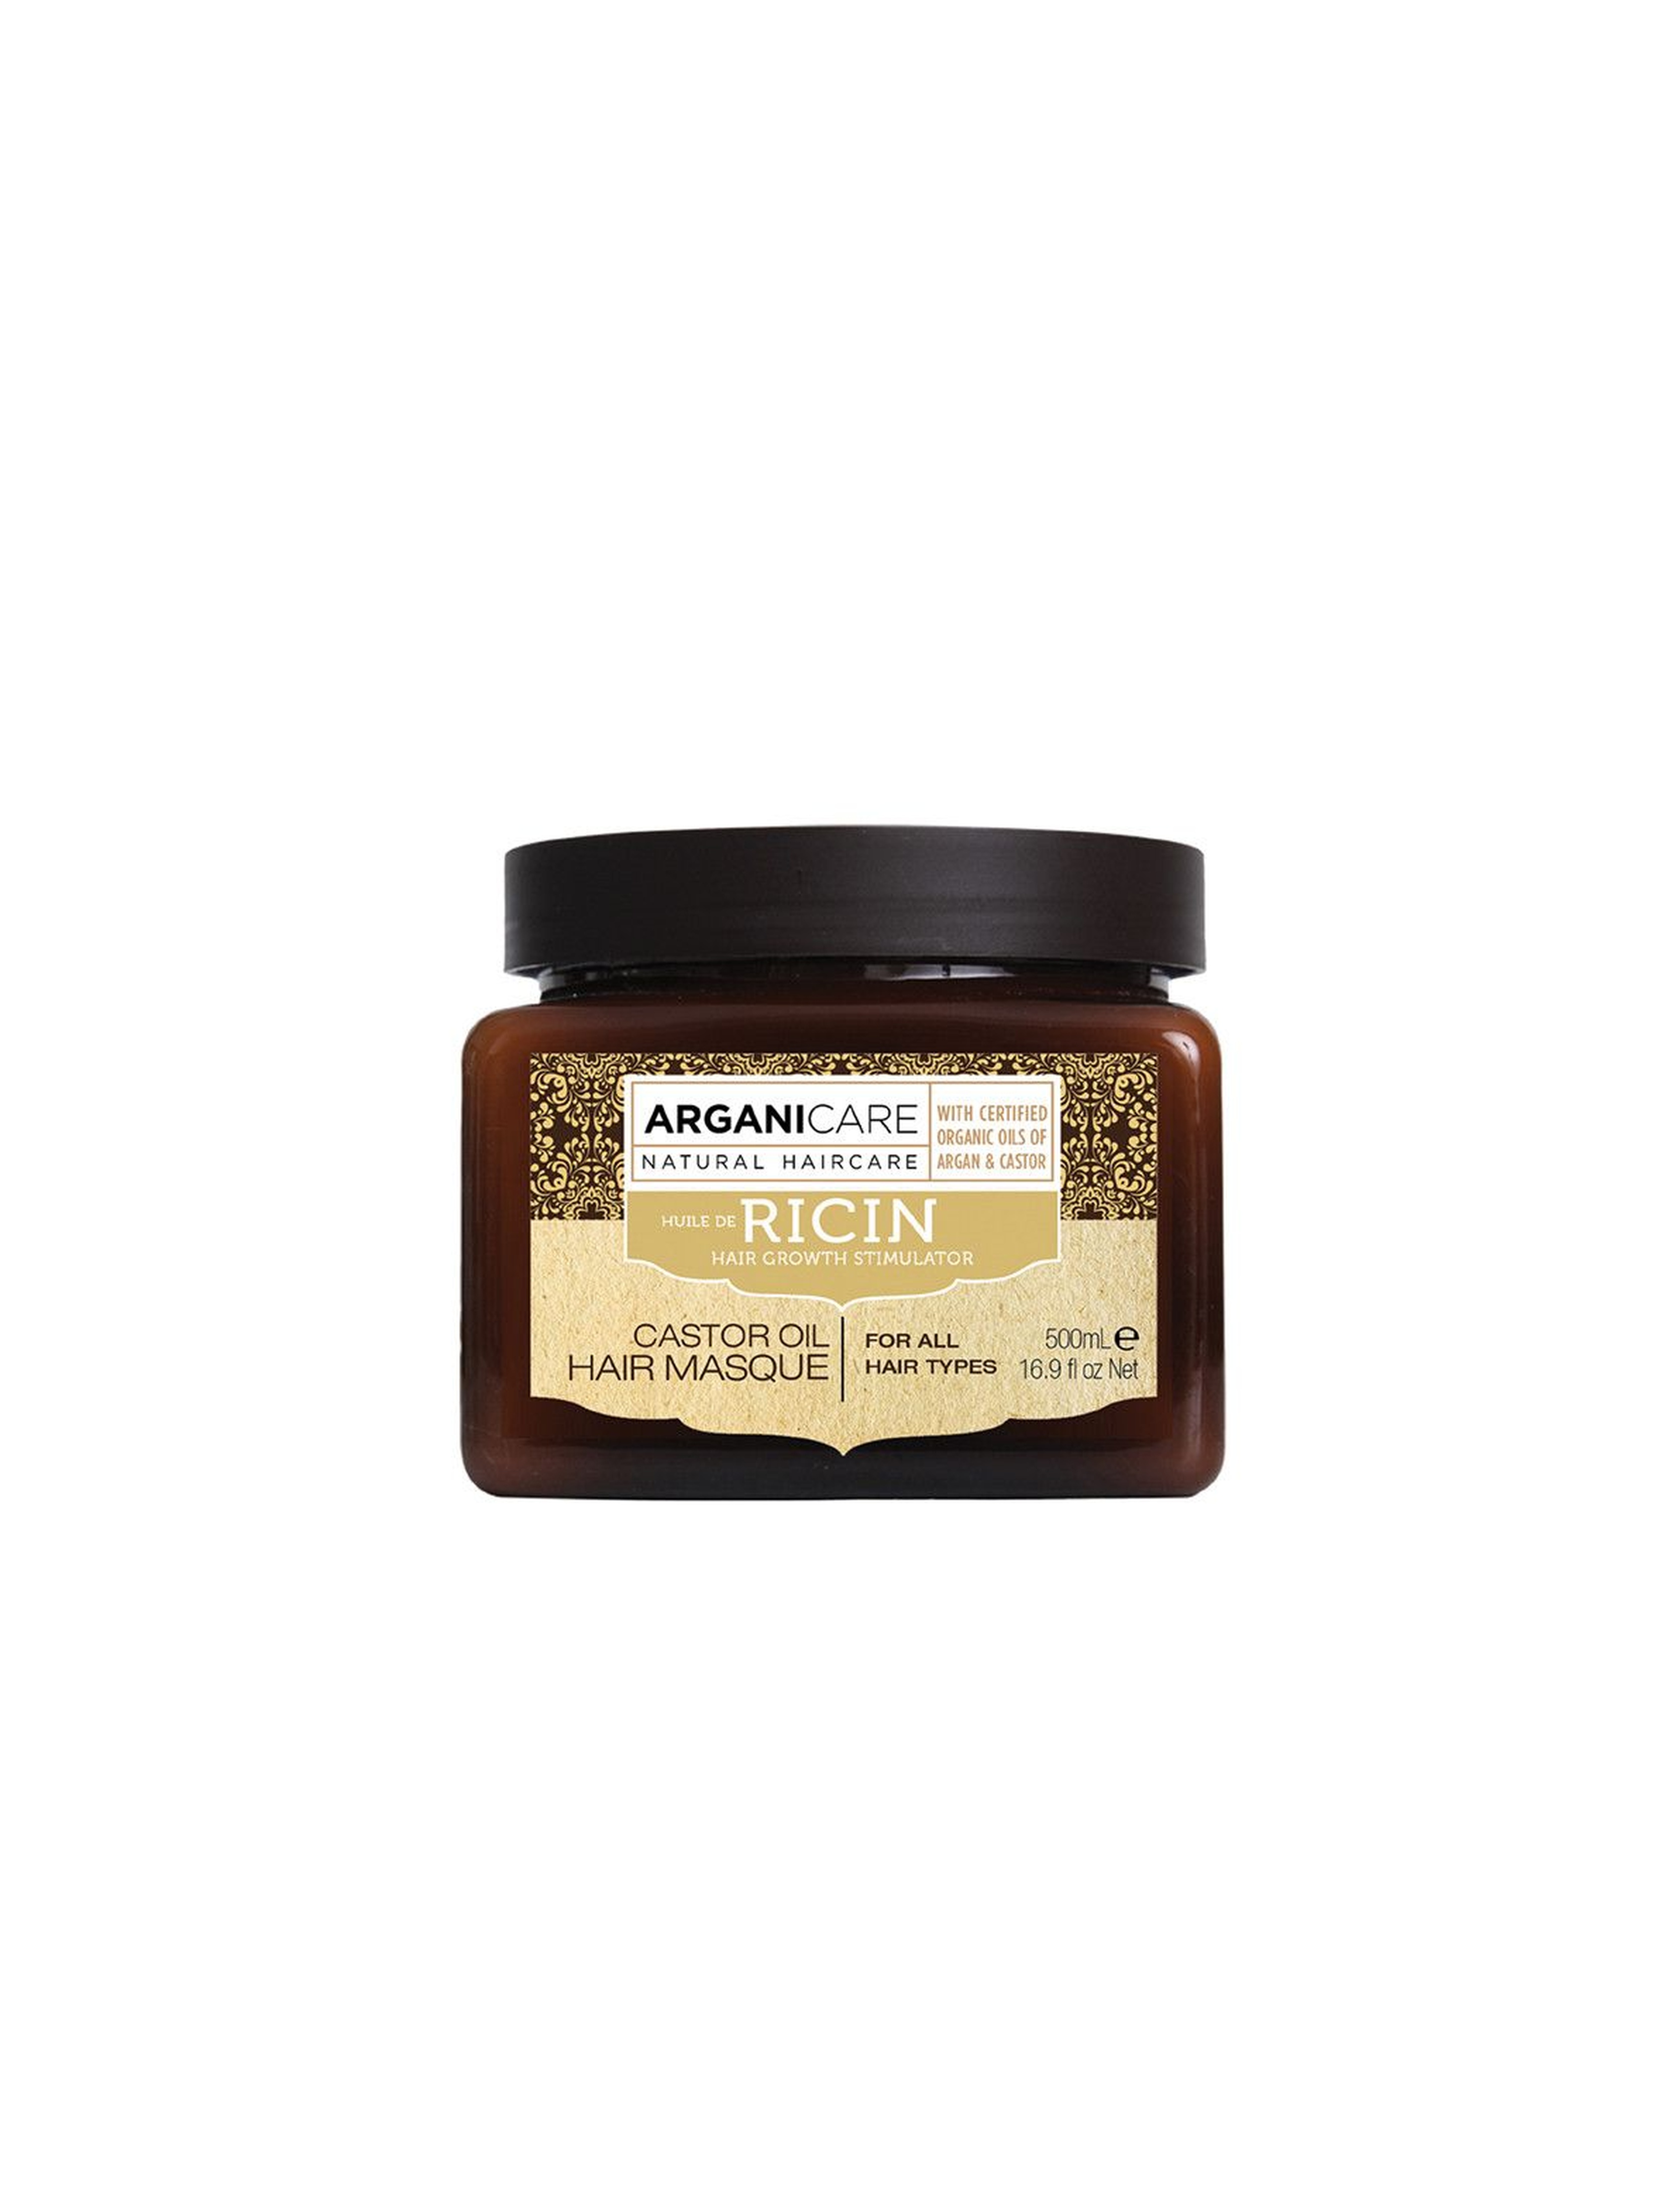 ARGANICARE NATURAL HAIRCARE Castor Oil  Masque maska z olejem rycynowym stymulująca porost włosów - 500 ml